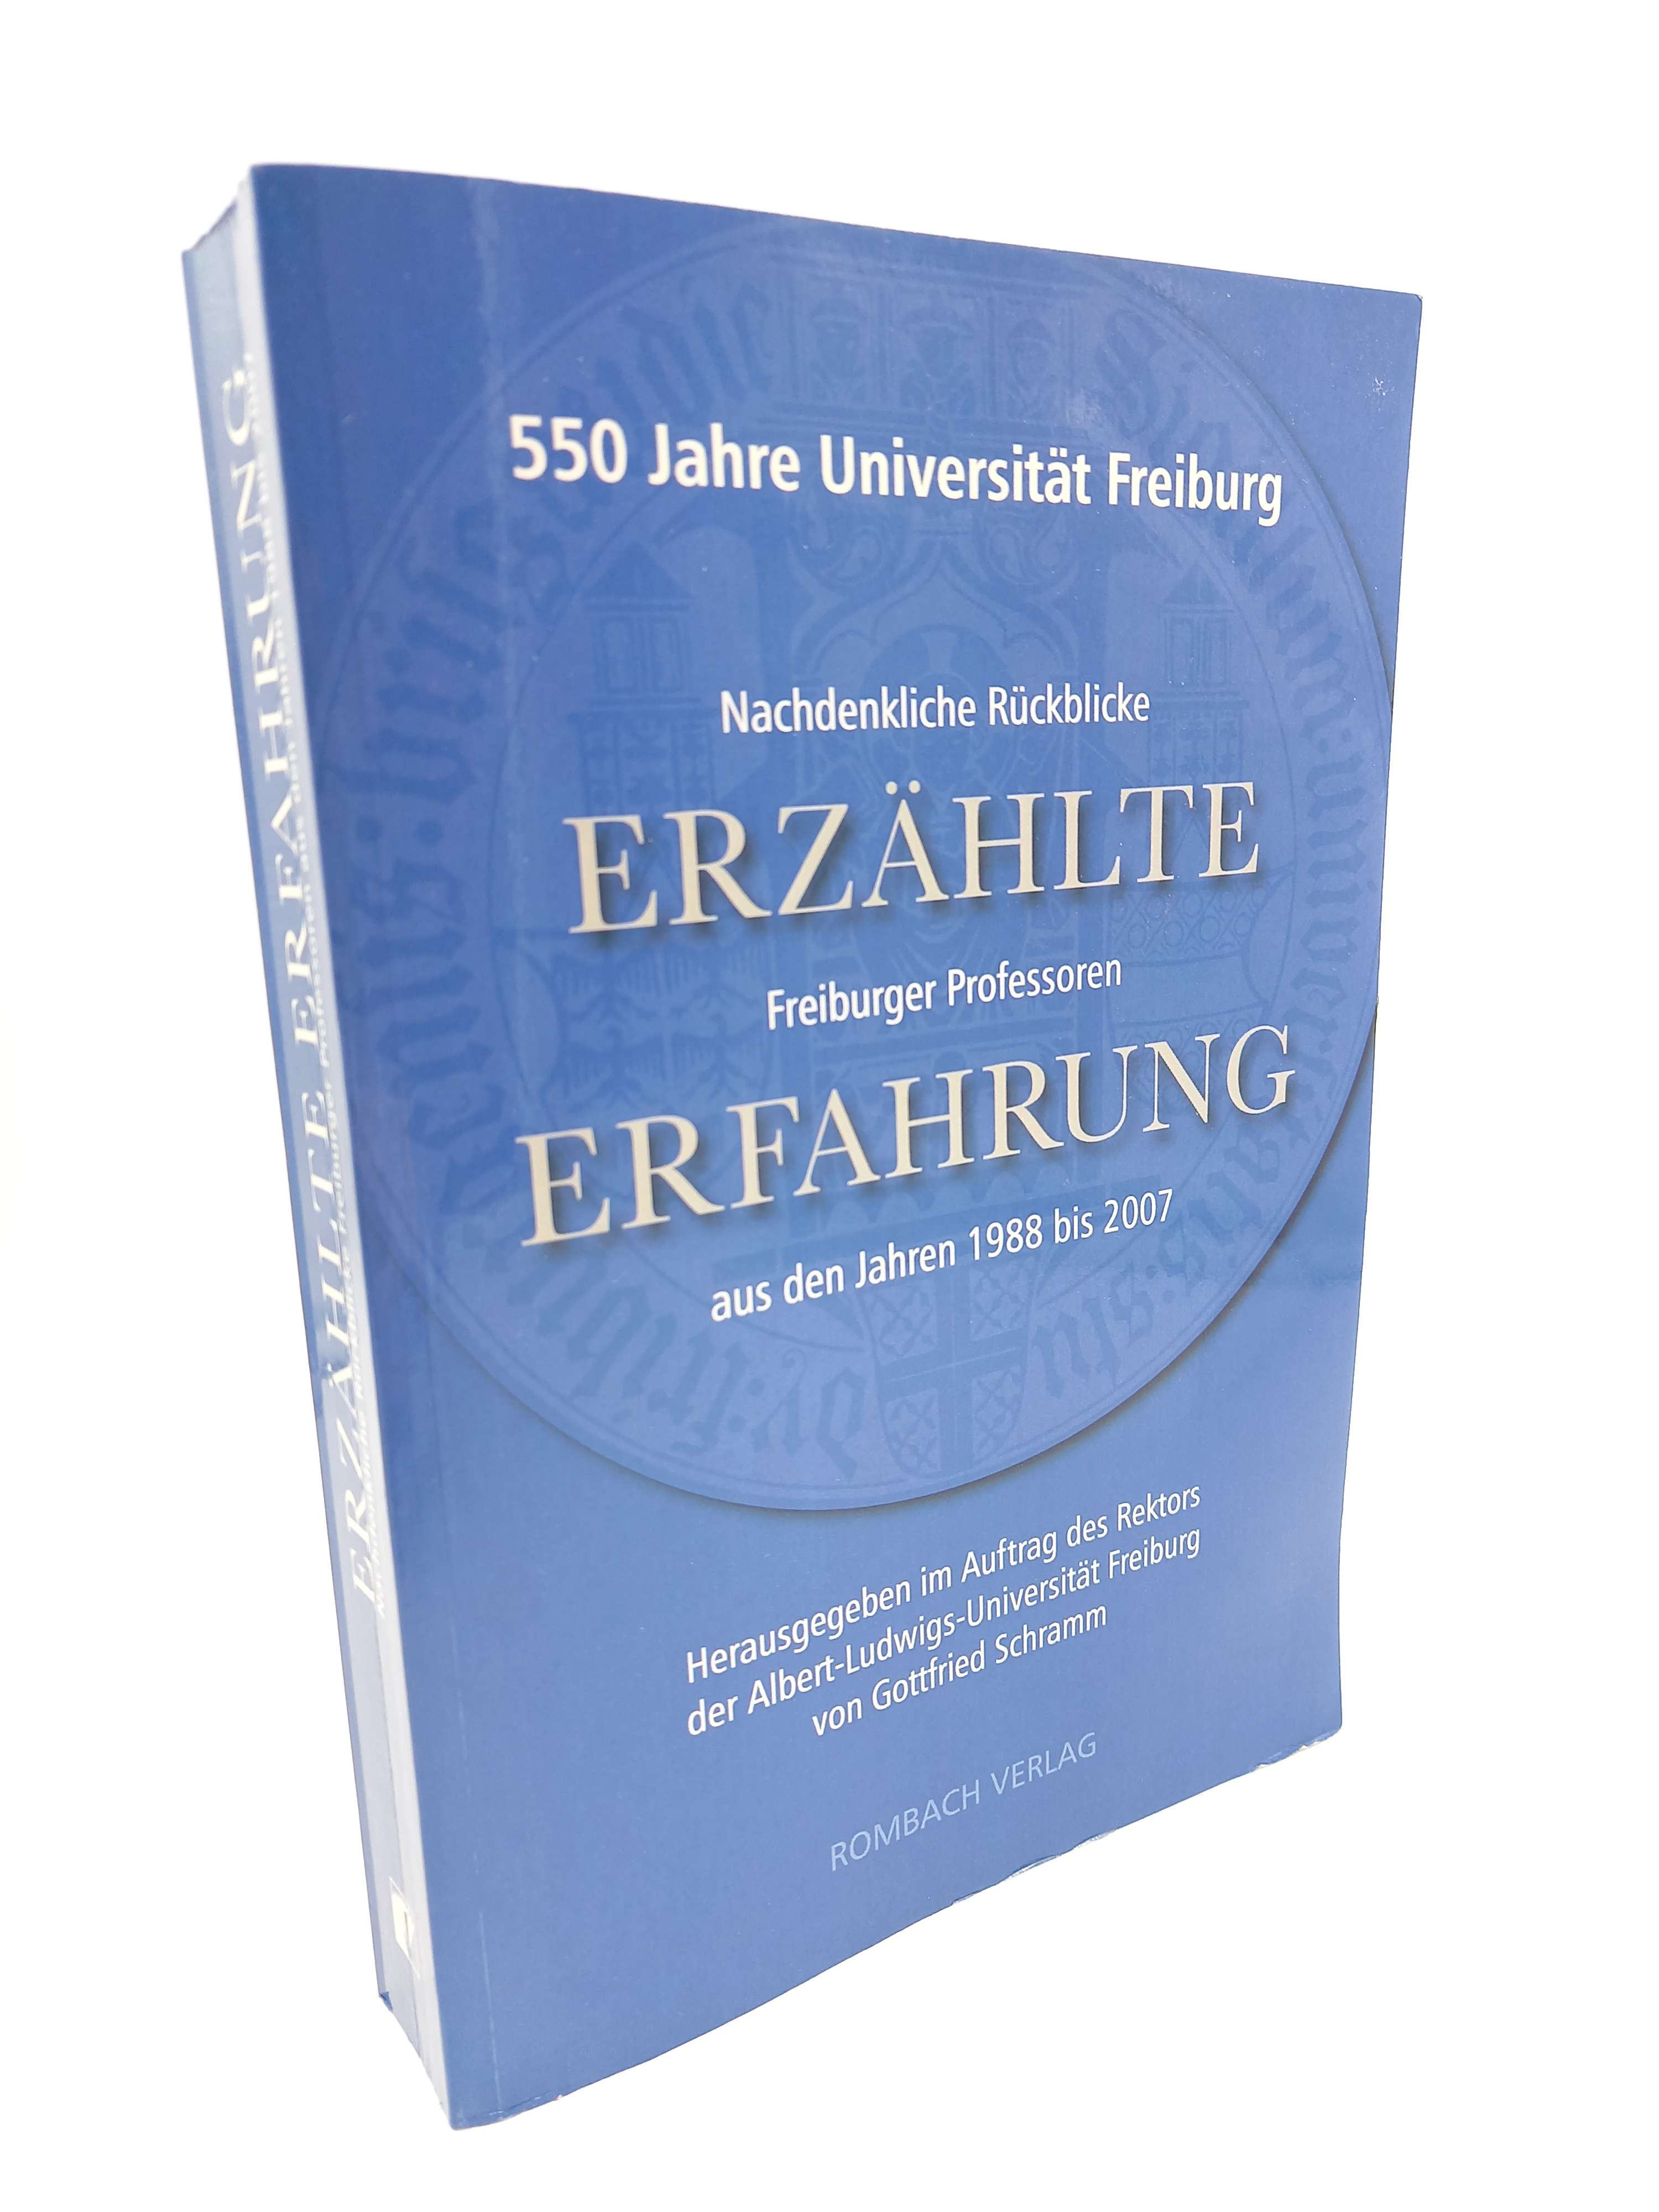 Erzählte Erfahrung Nachdenkliche Rückblicke Freiburger Professoren aus den Jahren 1988 bis 2007 (550 Jahre Universität Freiburg) - Schramm, Gottfried [Hrsg.] -